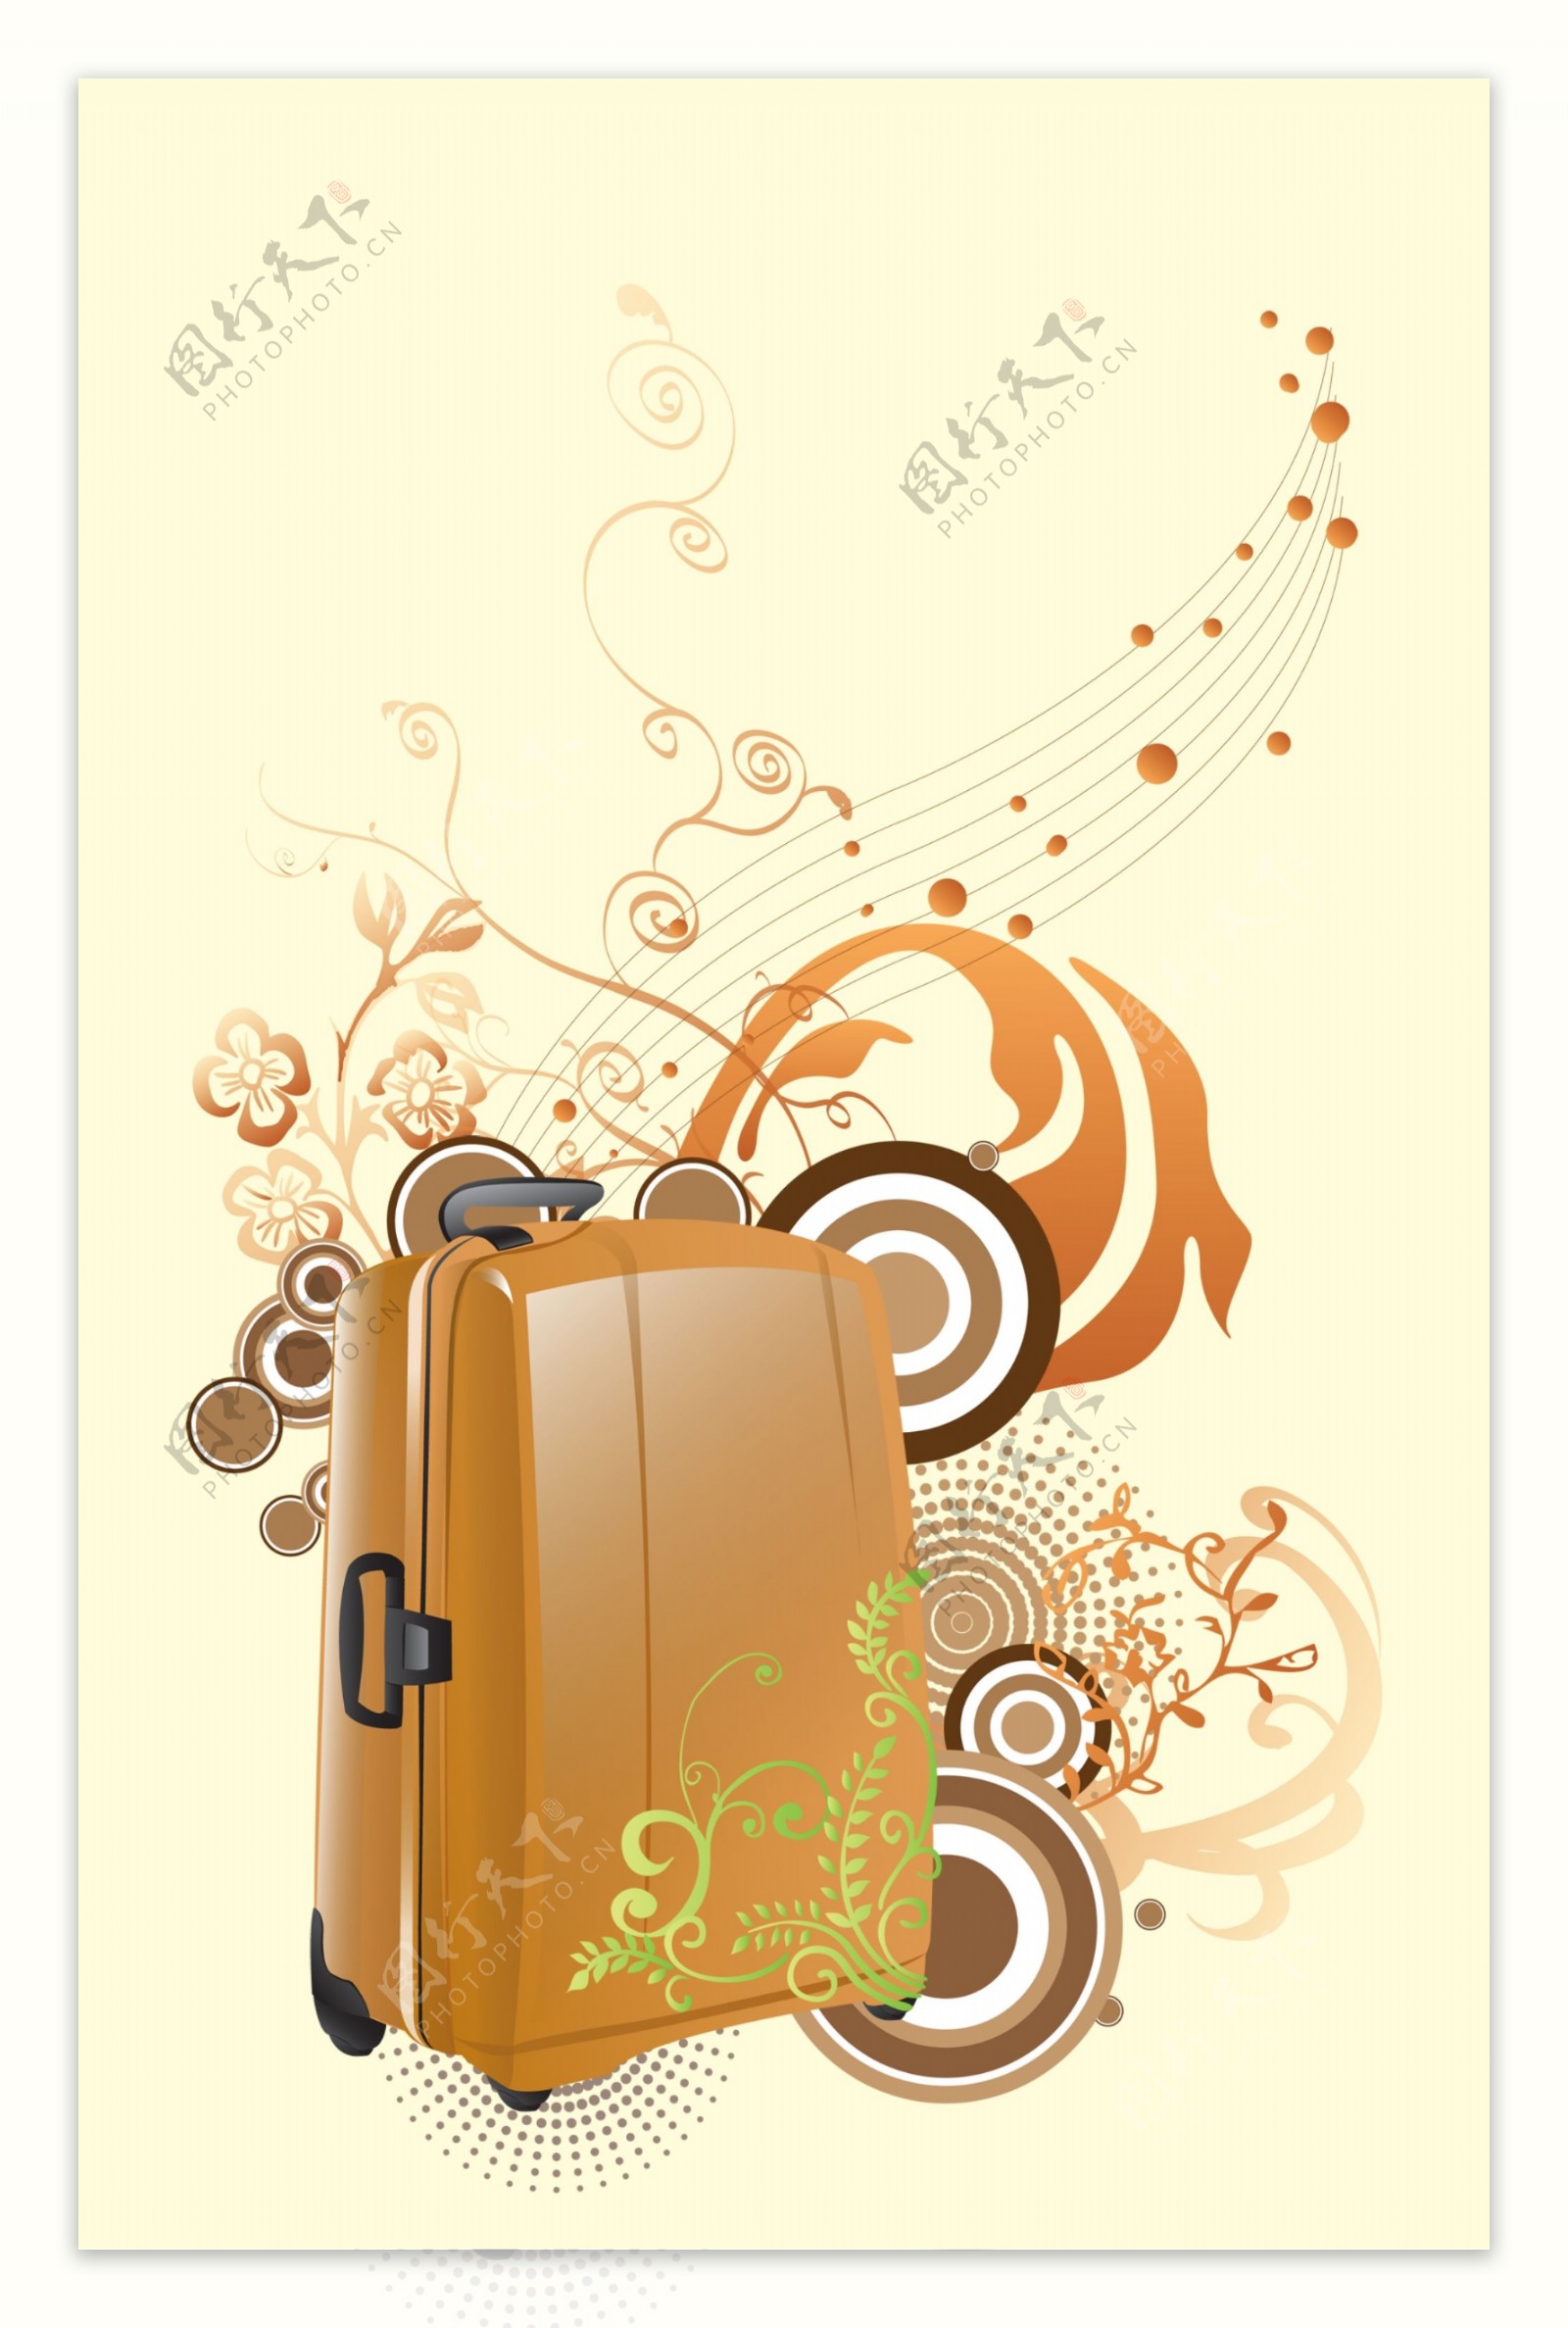 行李箱与曲线花纹炫彩时尚曲线线条